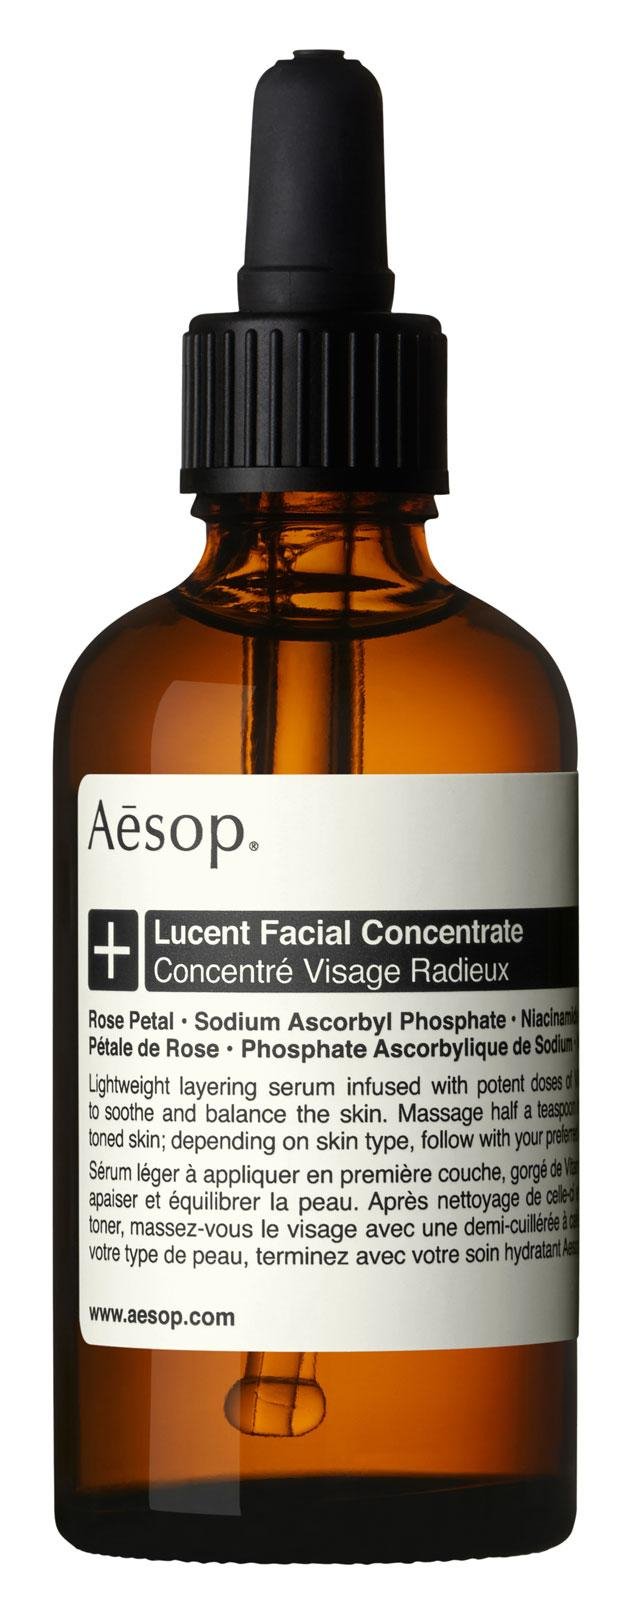 مستحضرات Aesop - مستحضر العناية بالبشرة Lucent Facial Concentrate